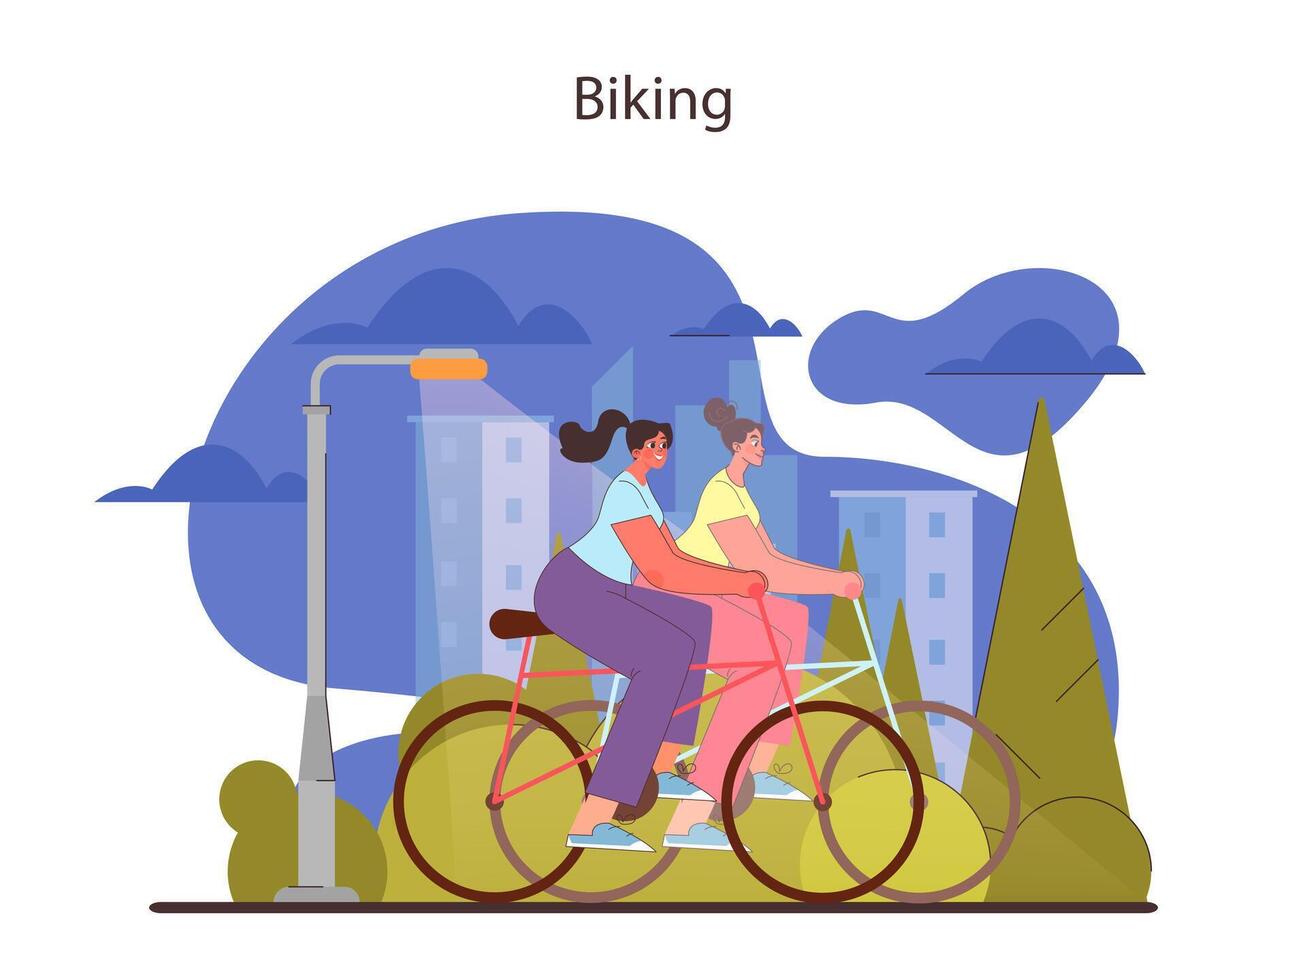 Biking concept. Friends enjoying a bike ride through the city park. vector